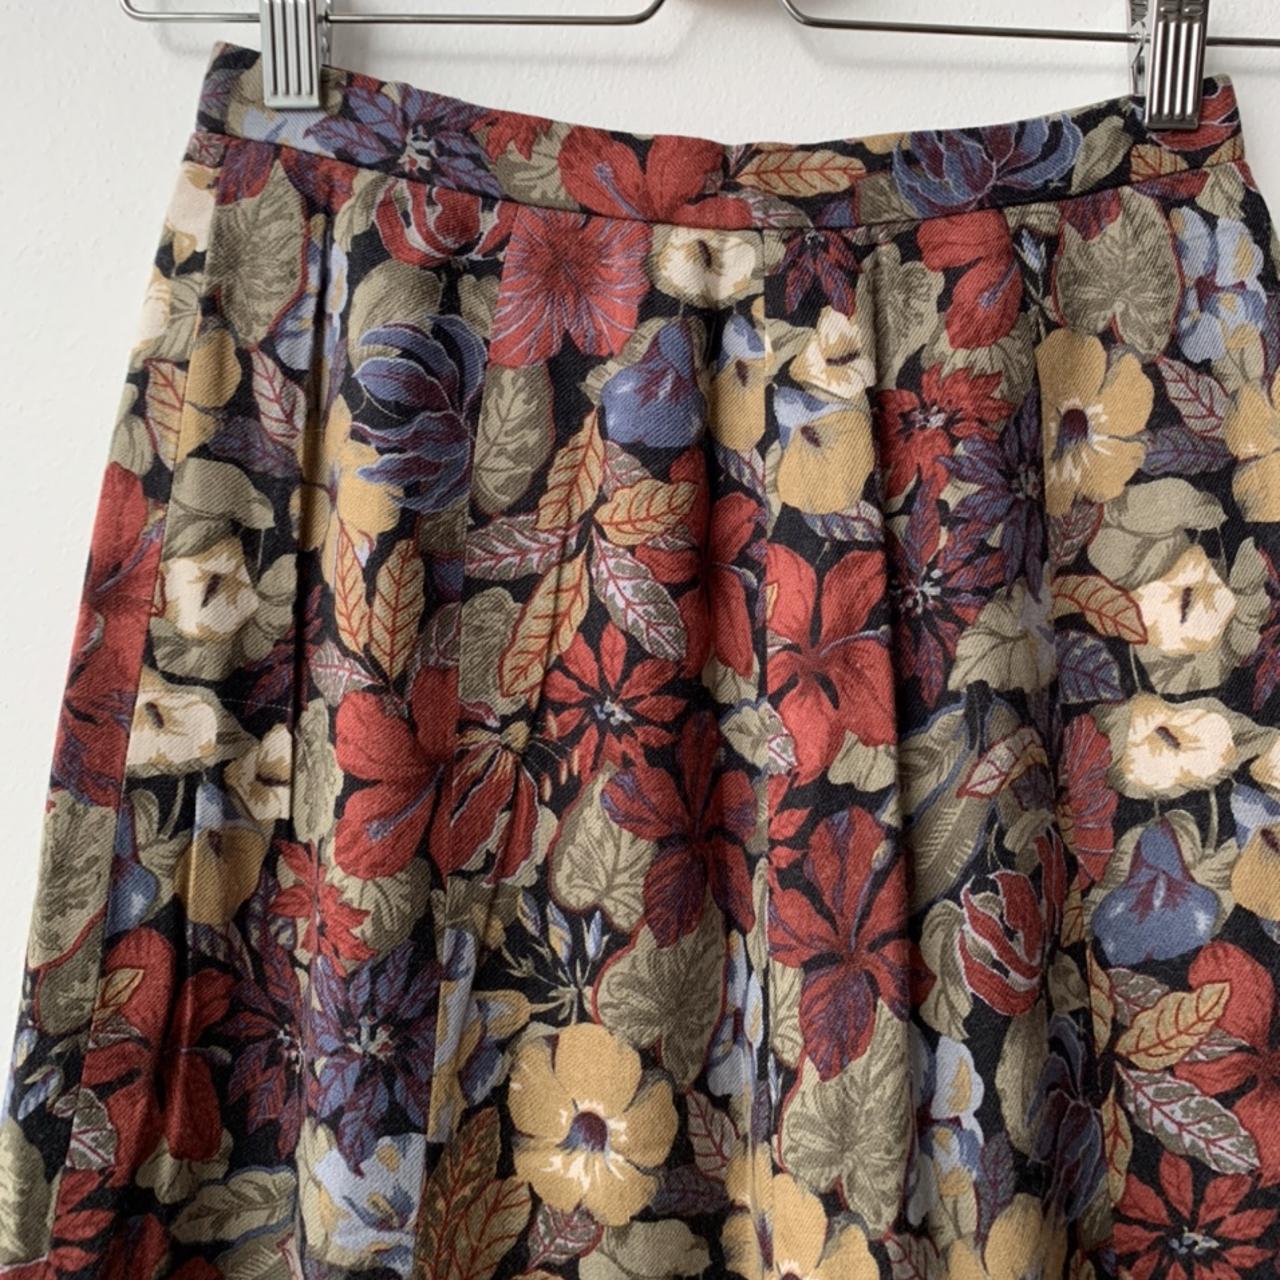 Vintage cotton burgundy floral print skirt from... - Depop